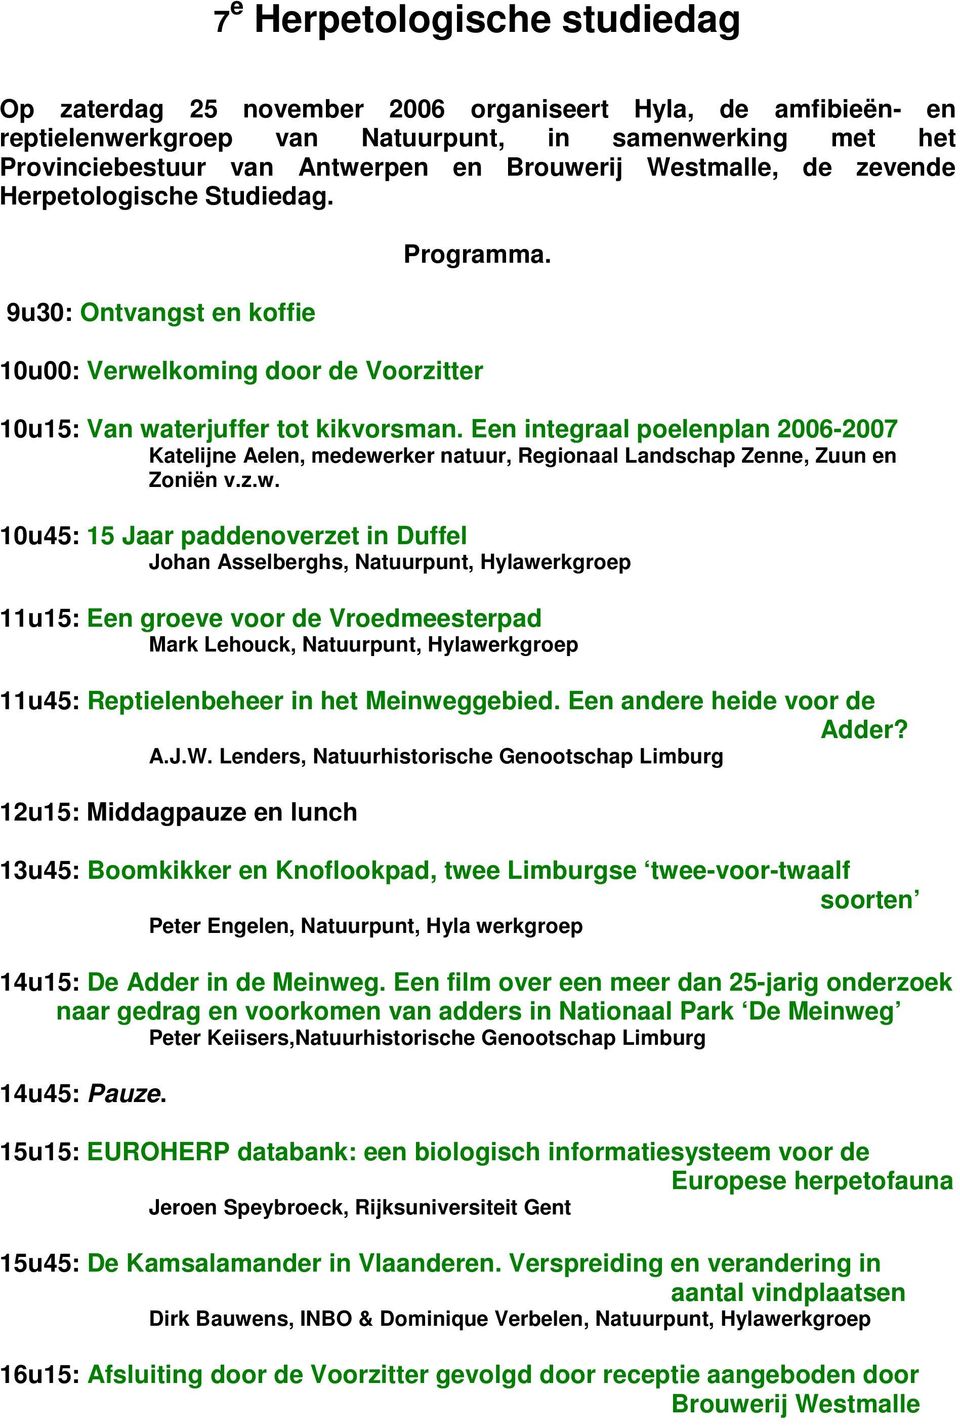 Een integraal poelenplan 2006-2007 Katelijne Aelen, medewe